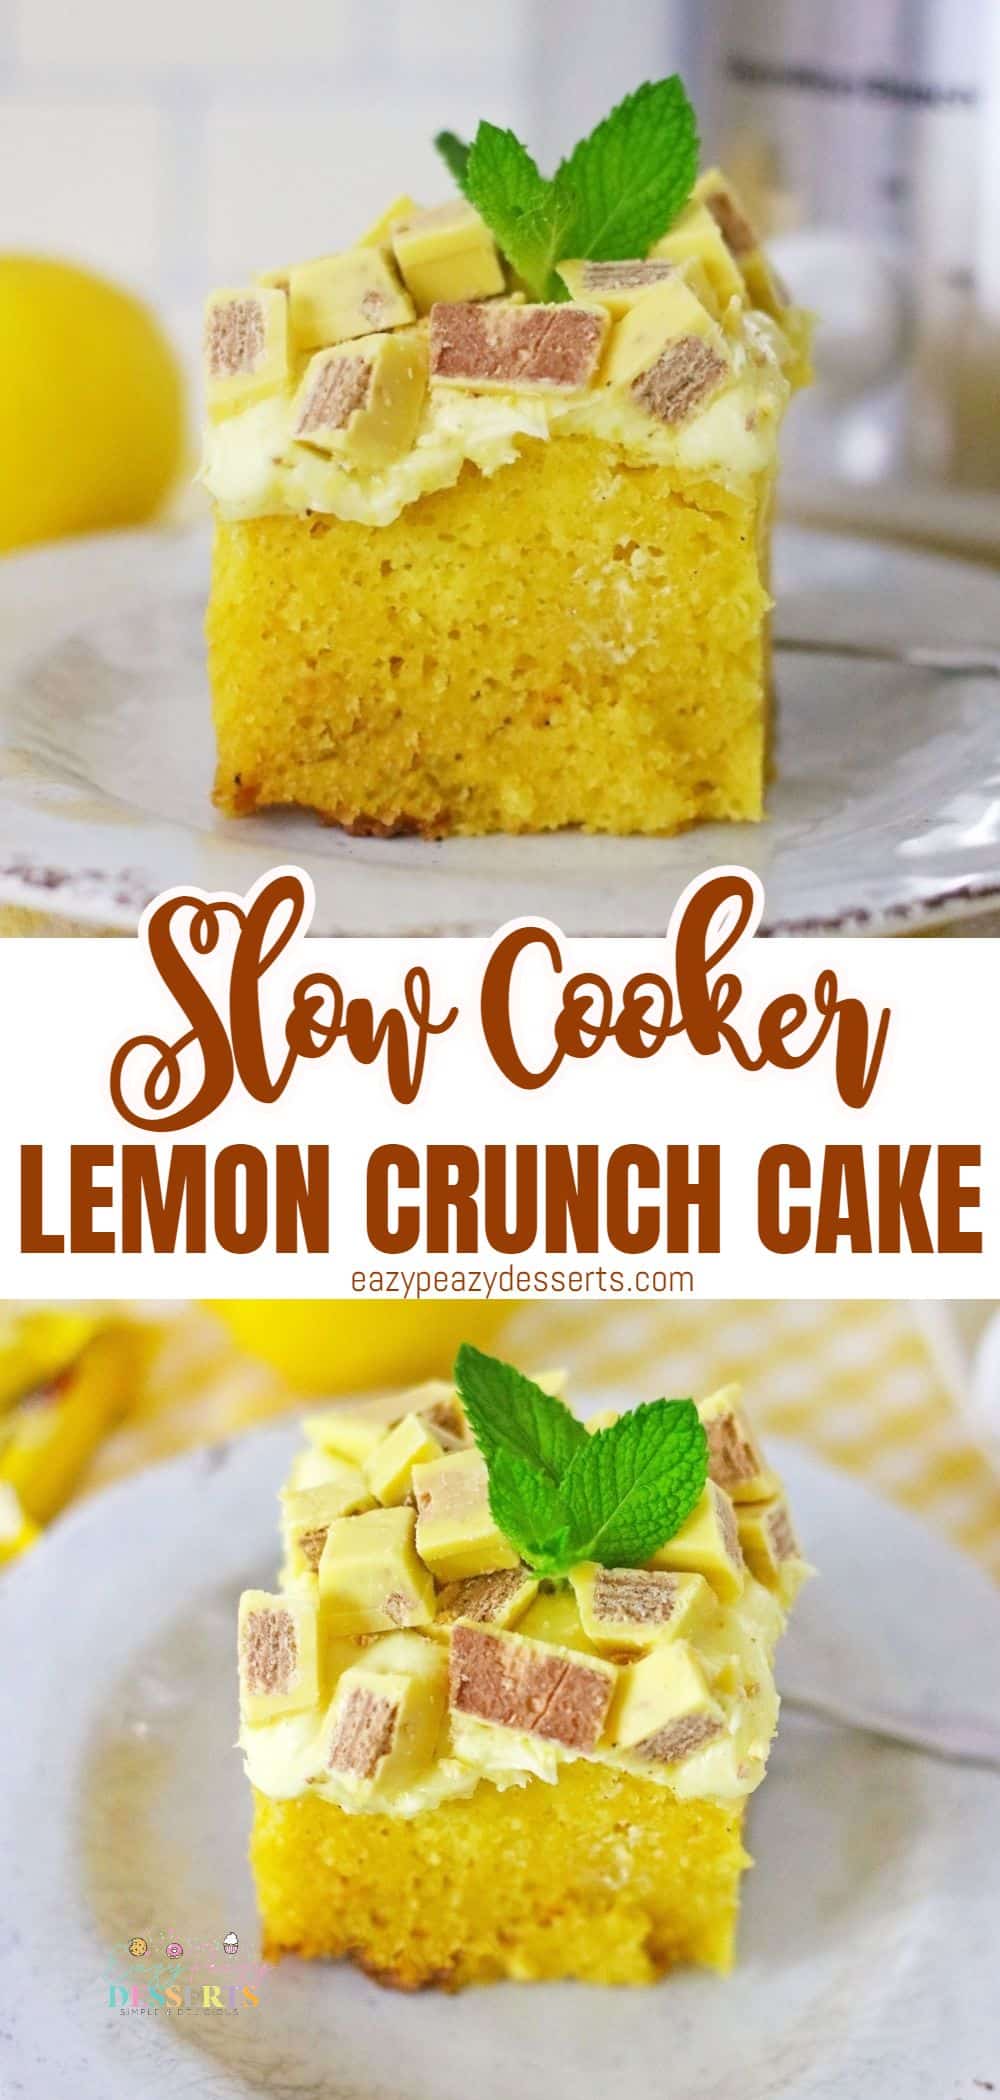 Lemon crunch cake